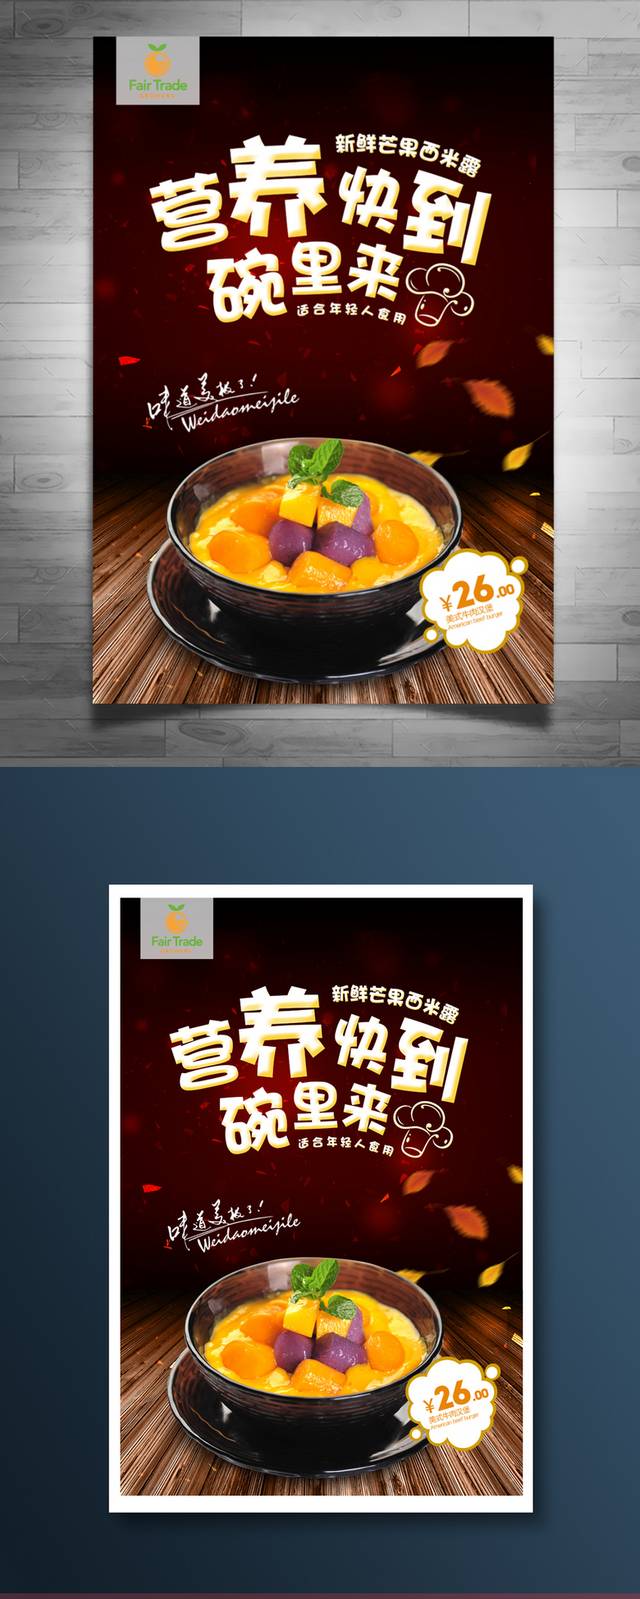 高清奶茶店芒果西米露宣传海报设计下载